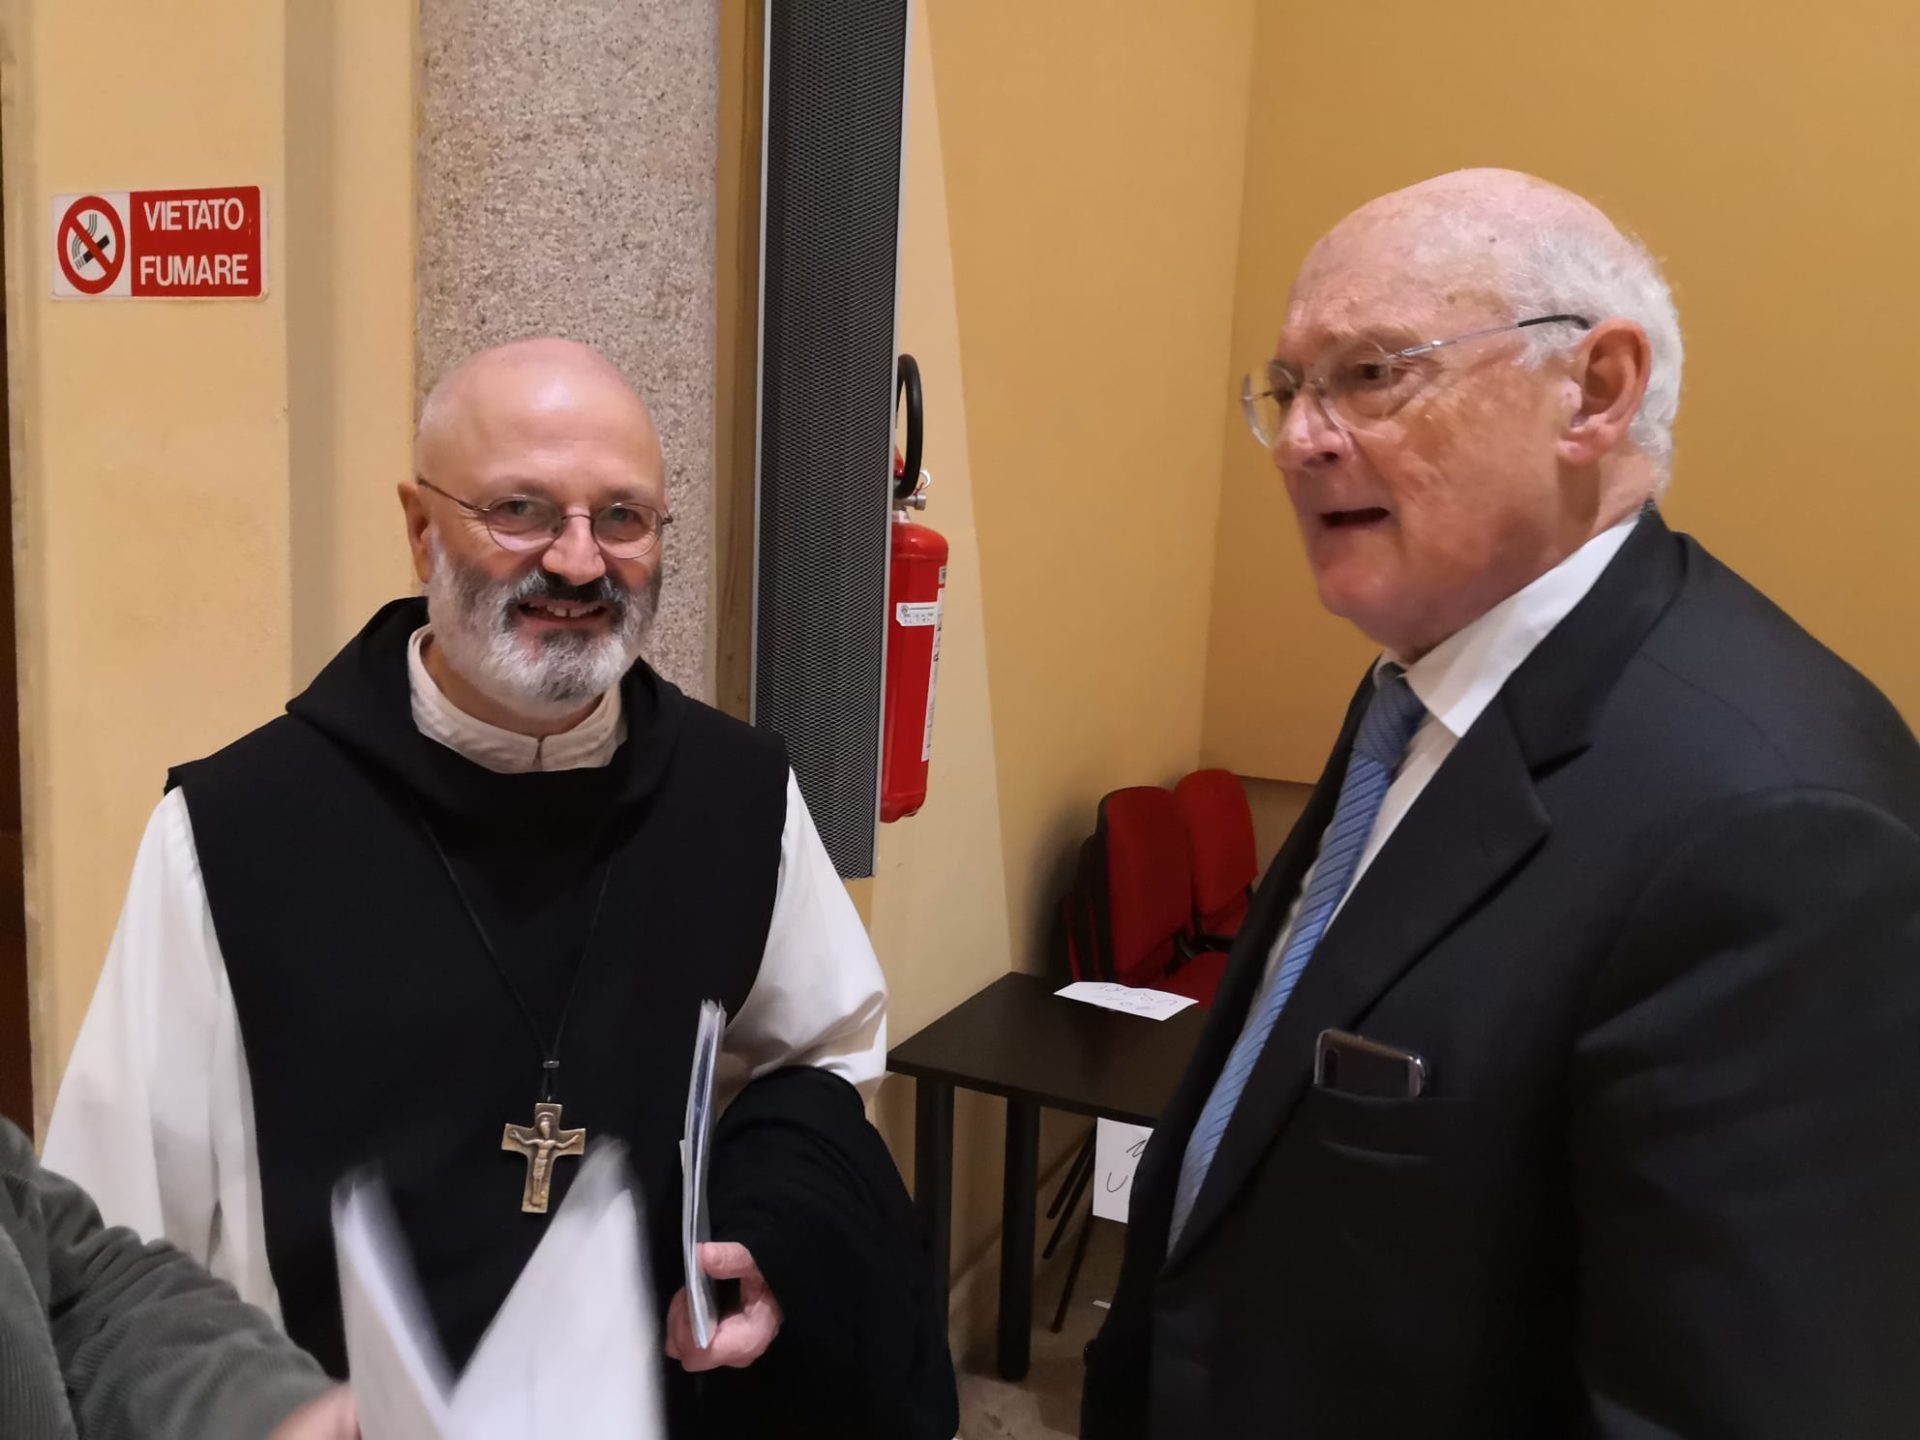 Da sinistra: Il ticenese Mauro Lepori, abate generale dei Cistercensi  e l'economista prof. Stefano Zamagni, presidente della Pontificia Accademia della Scienze Sociali (foto catt.ch)